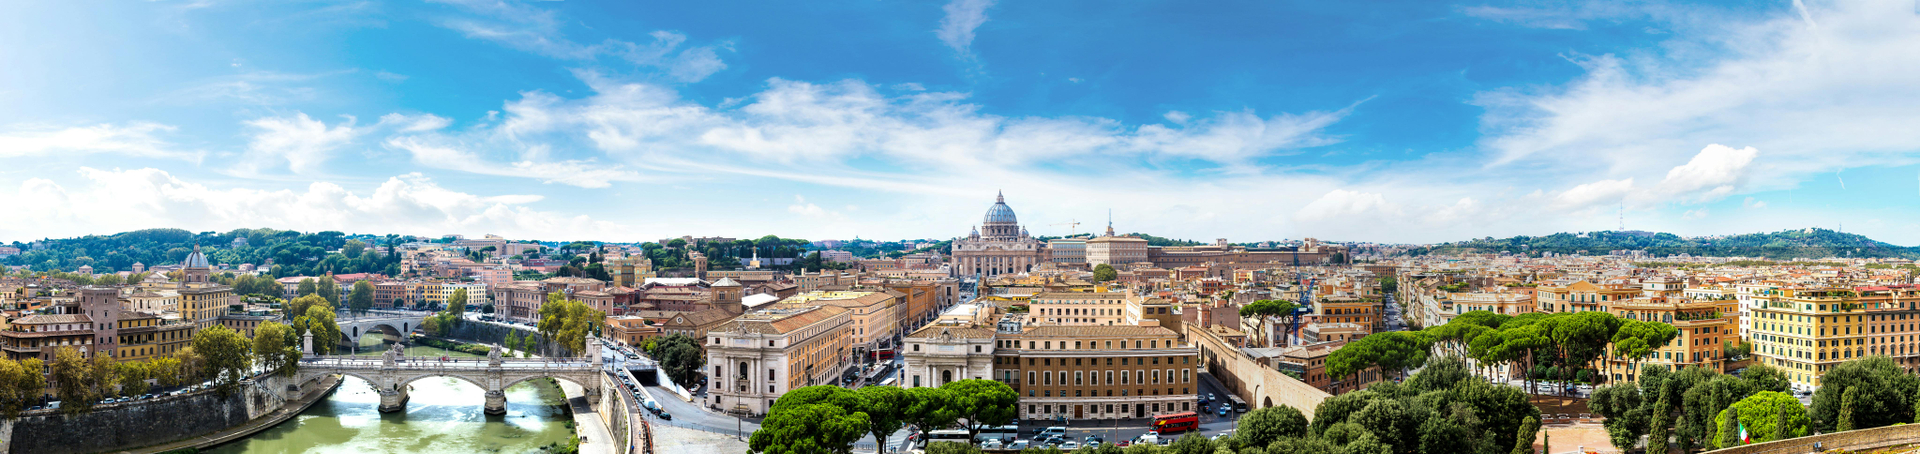 Visita guiada a los Museos Vaticanos, la Capilla Sixtina y la basílica de San Pedro con bus turístico 24 o 48 horas